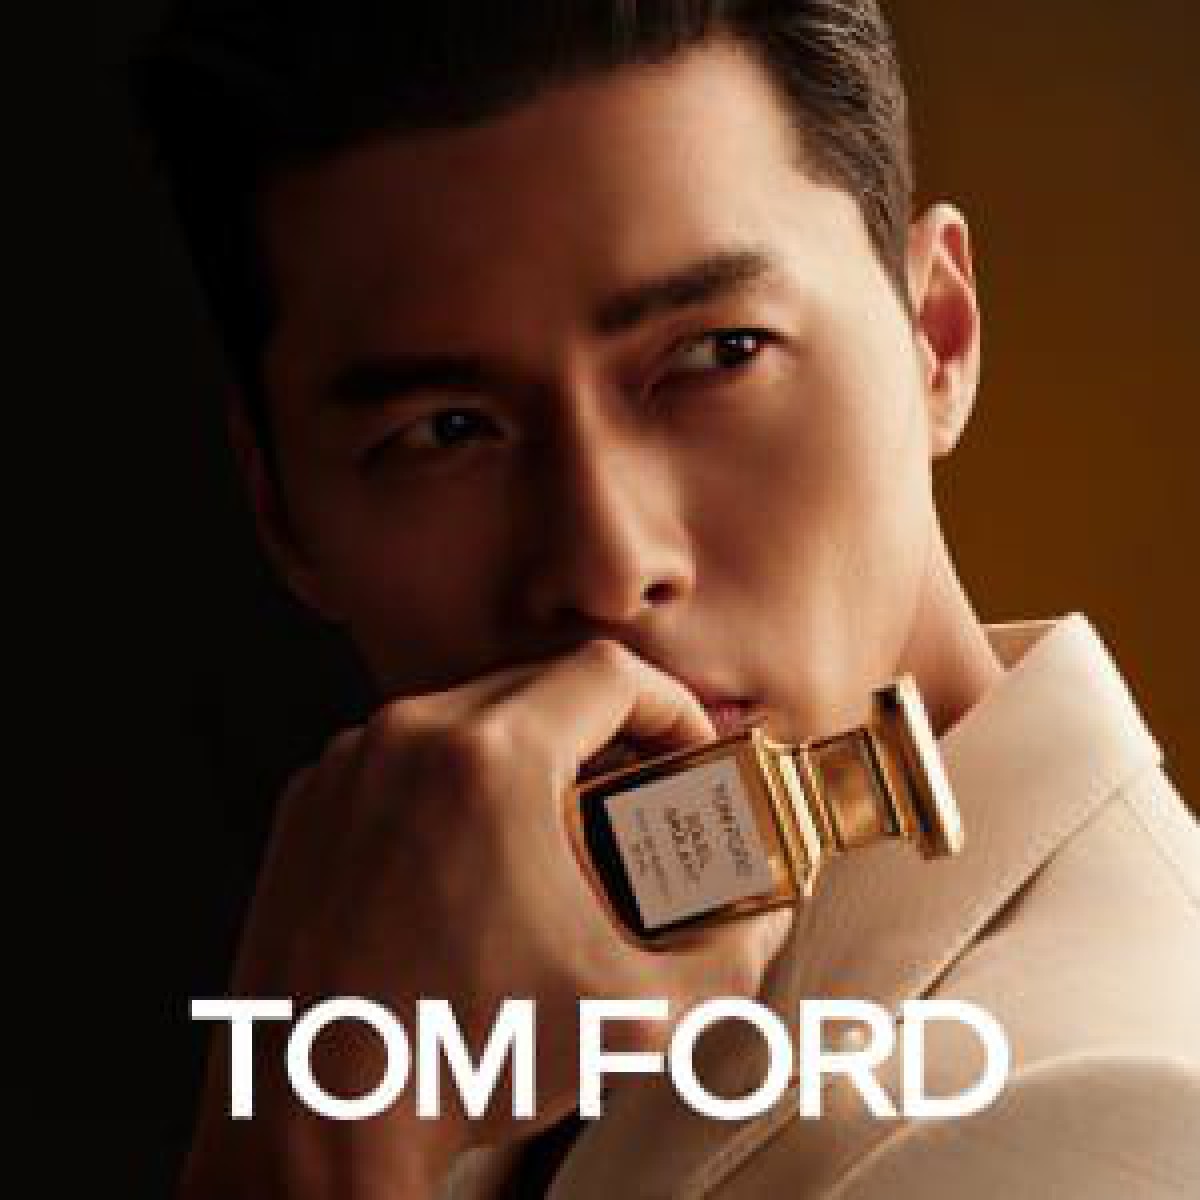 韓国人俳優ヒョンビンが「トム フォード ビューティ」フレグランスの顔に、新ヴィジュアルを公開